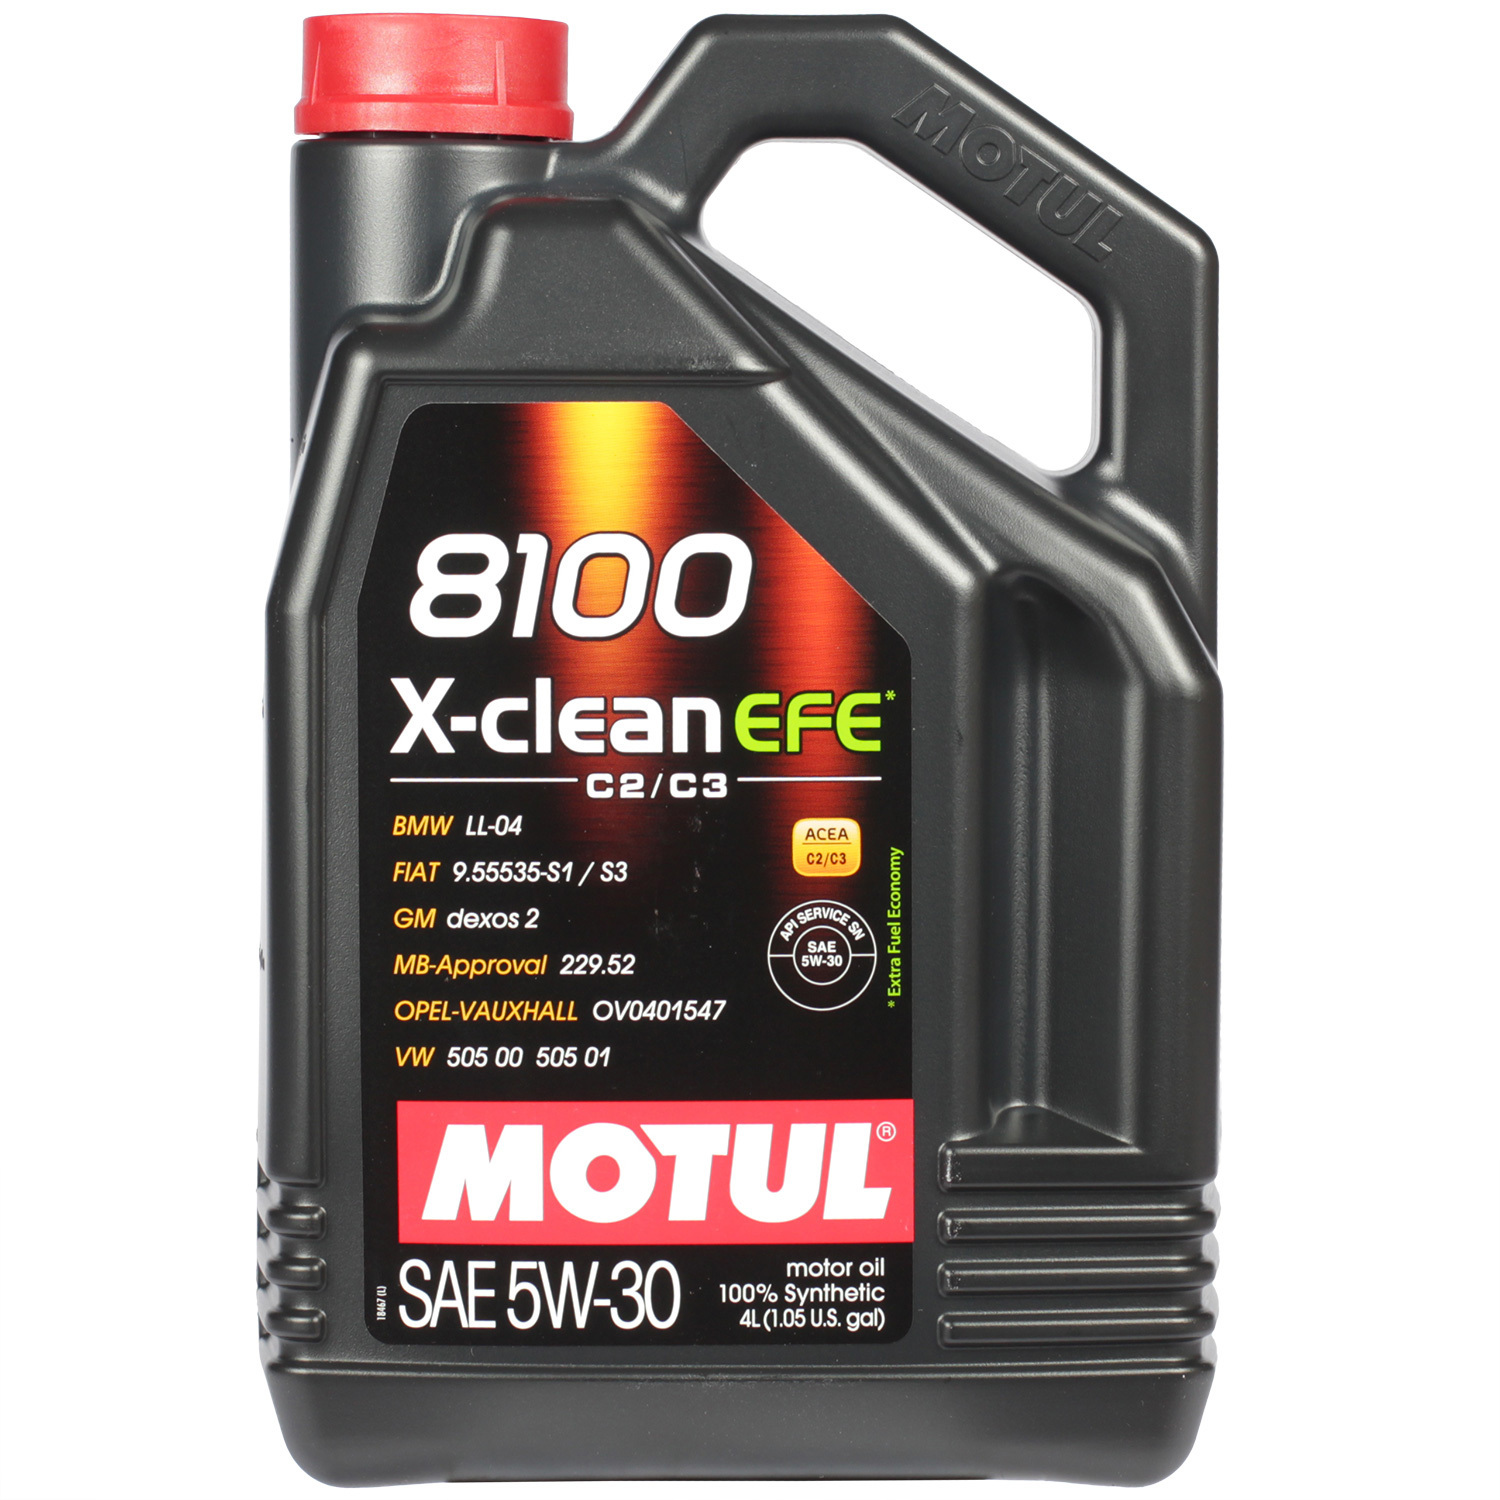 motul моторное масло motul 8100 x clean 5w 30 1 л Motul Моторное масло Motul 8100 X-clean EFE 5W-30, 4 л